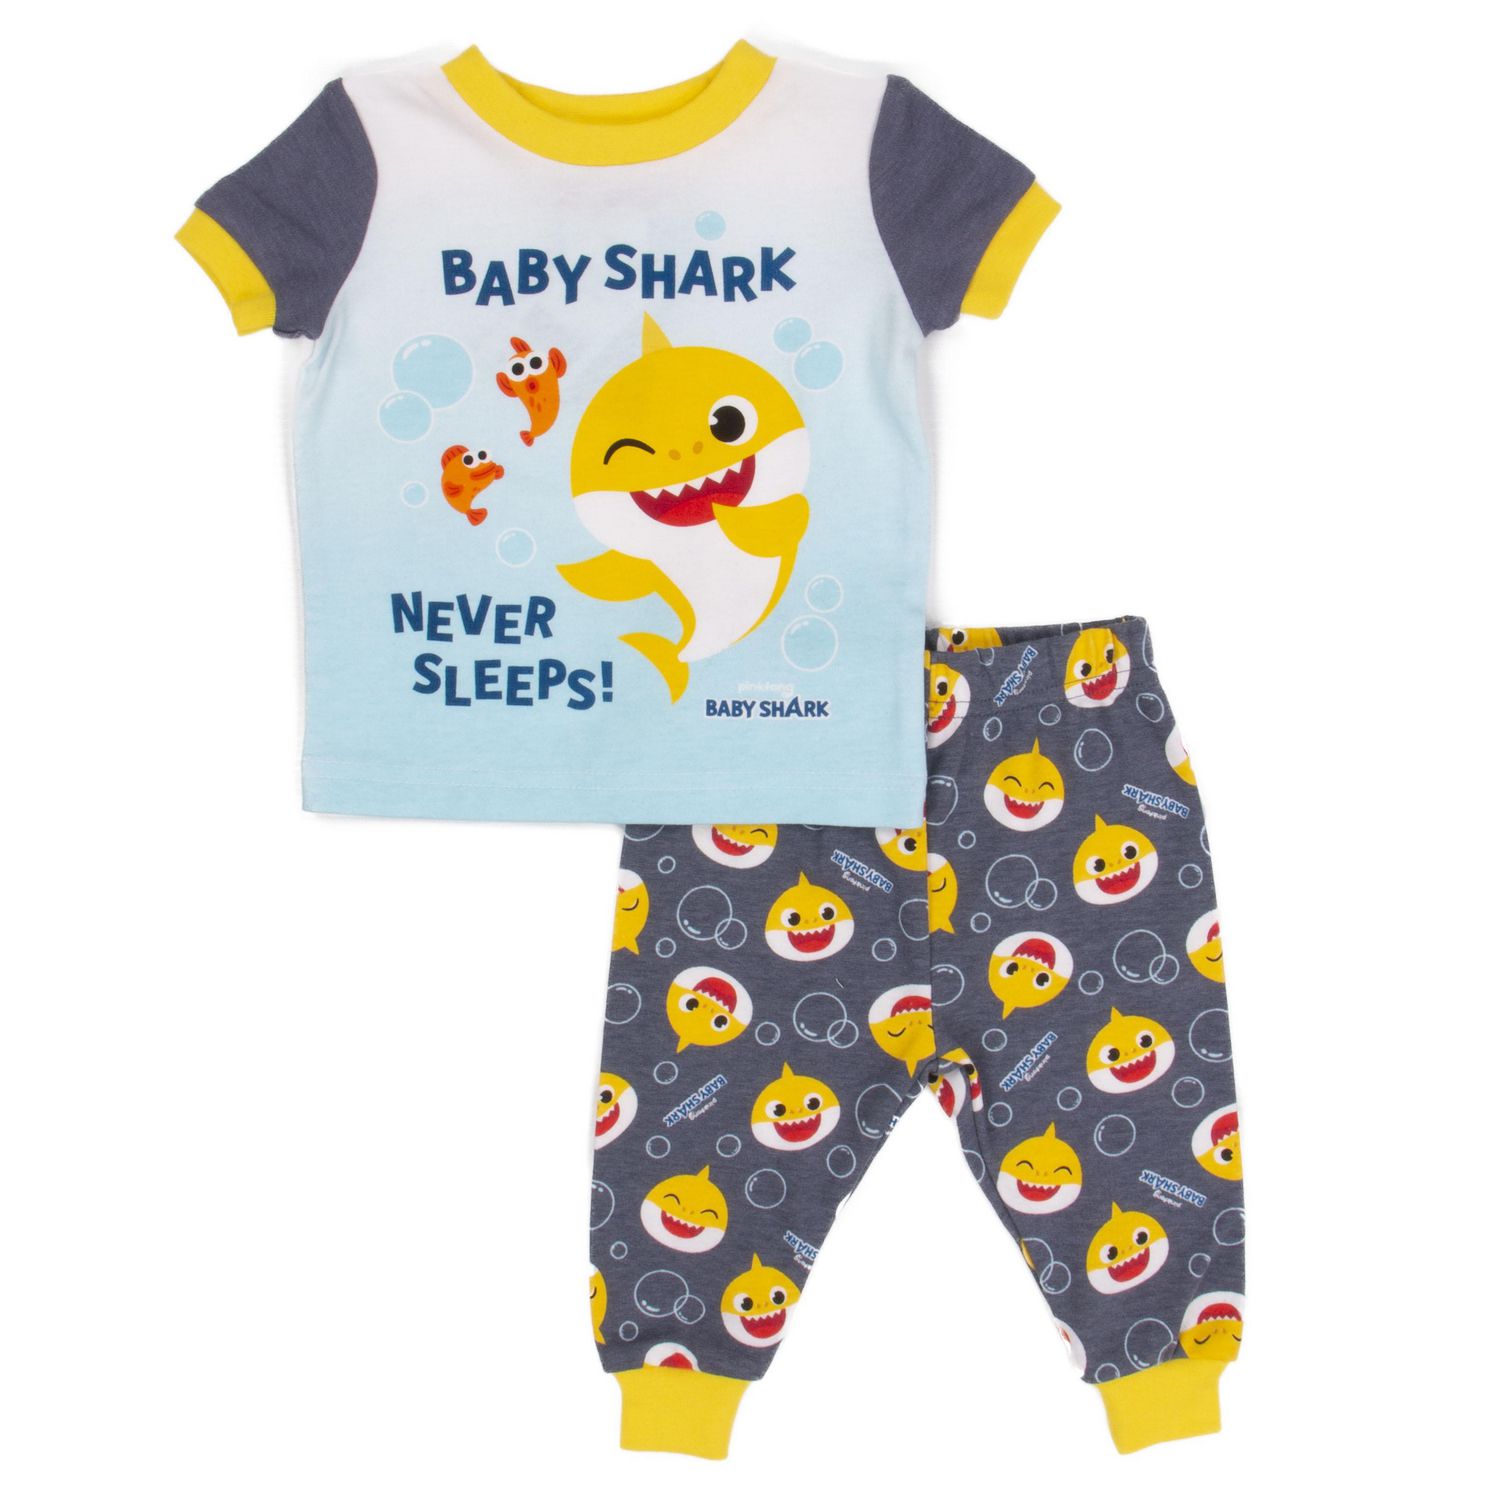 Baby Shark Toddler Boy's Short Sleeve Top and Pant Pyjamas 2 Piece Set 